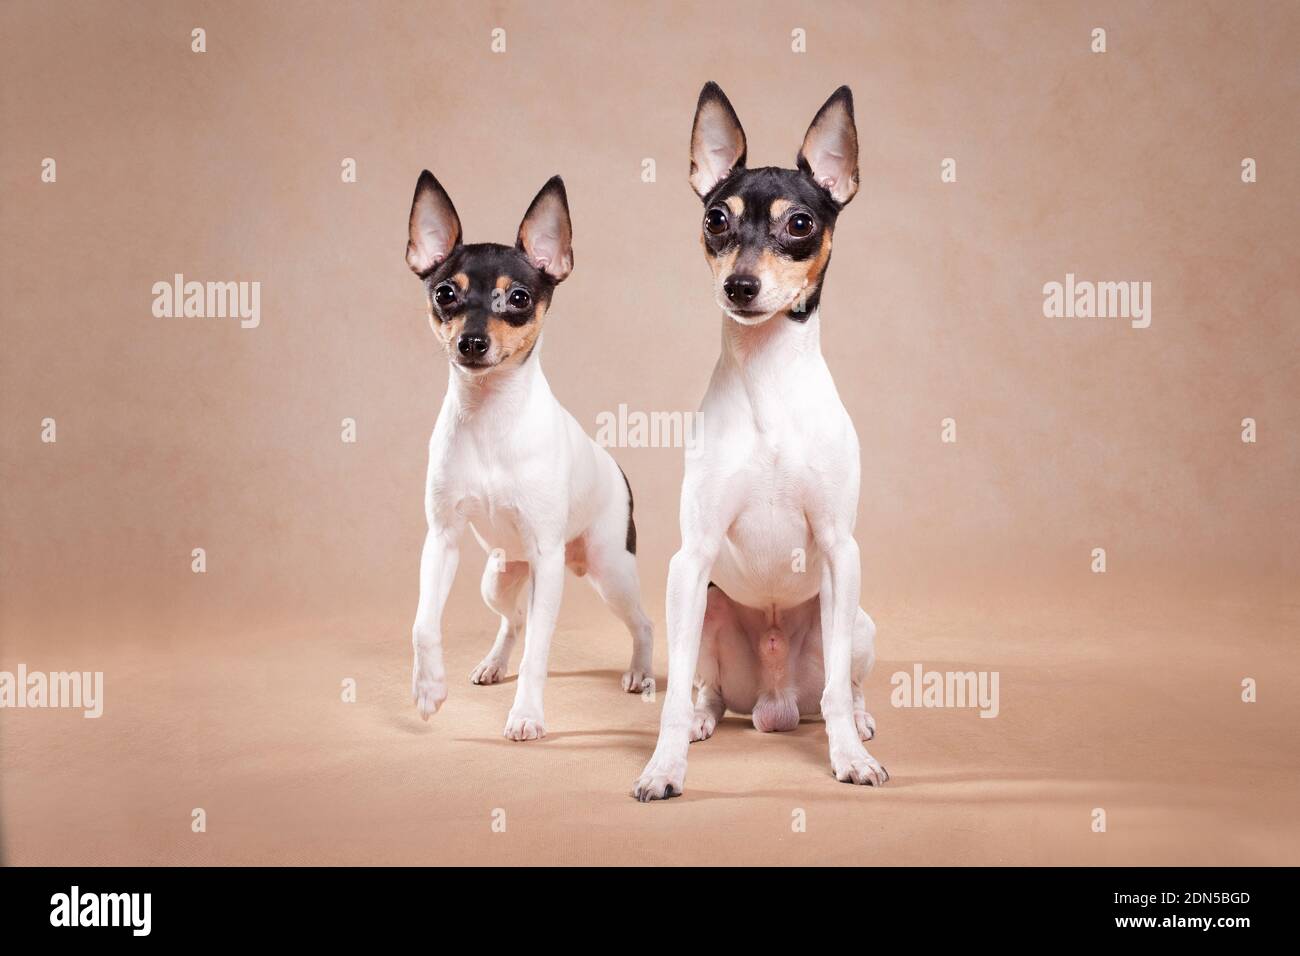 Dos perros de raza el zorro americano de eso a terrier se sienta sobre un fondo beige Foto de stock